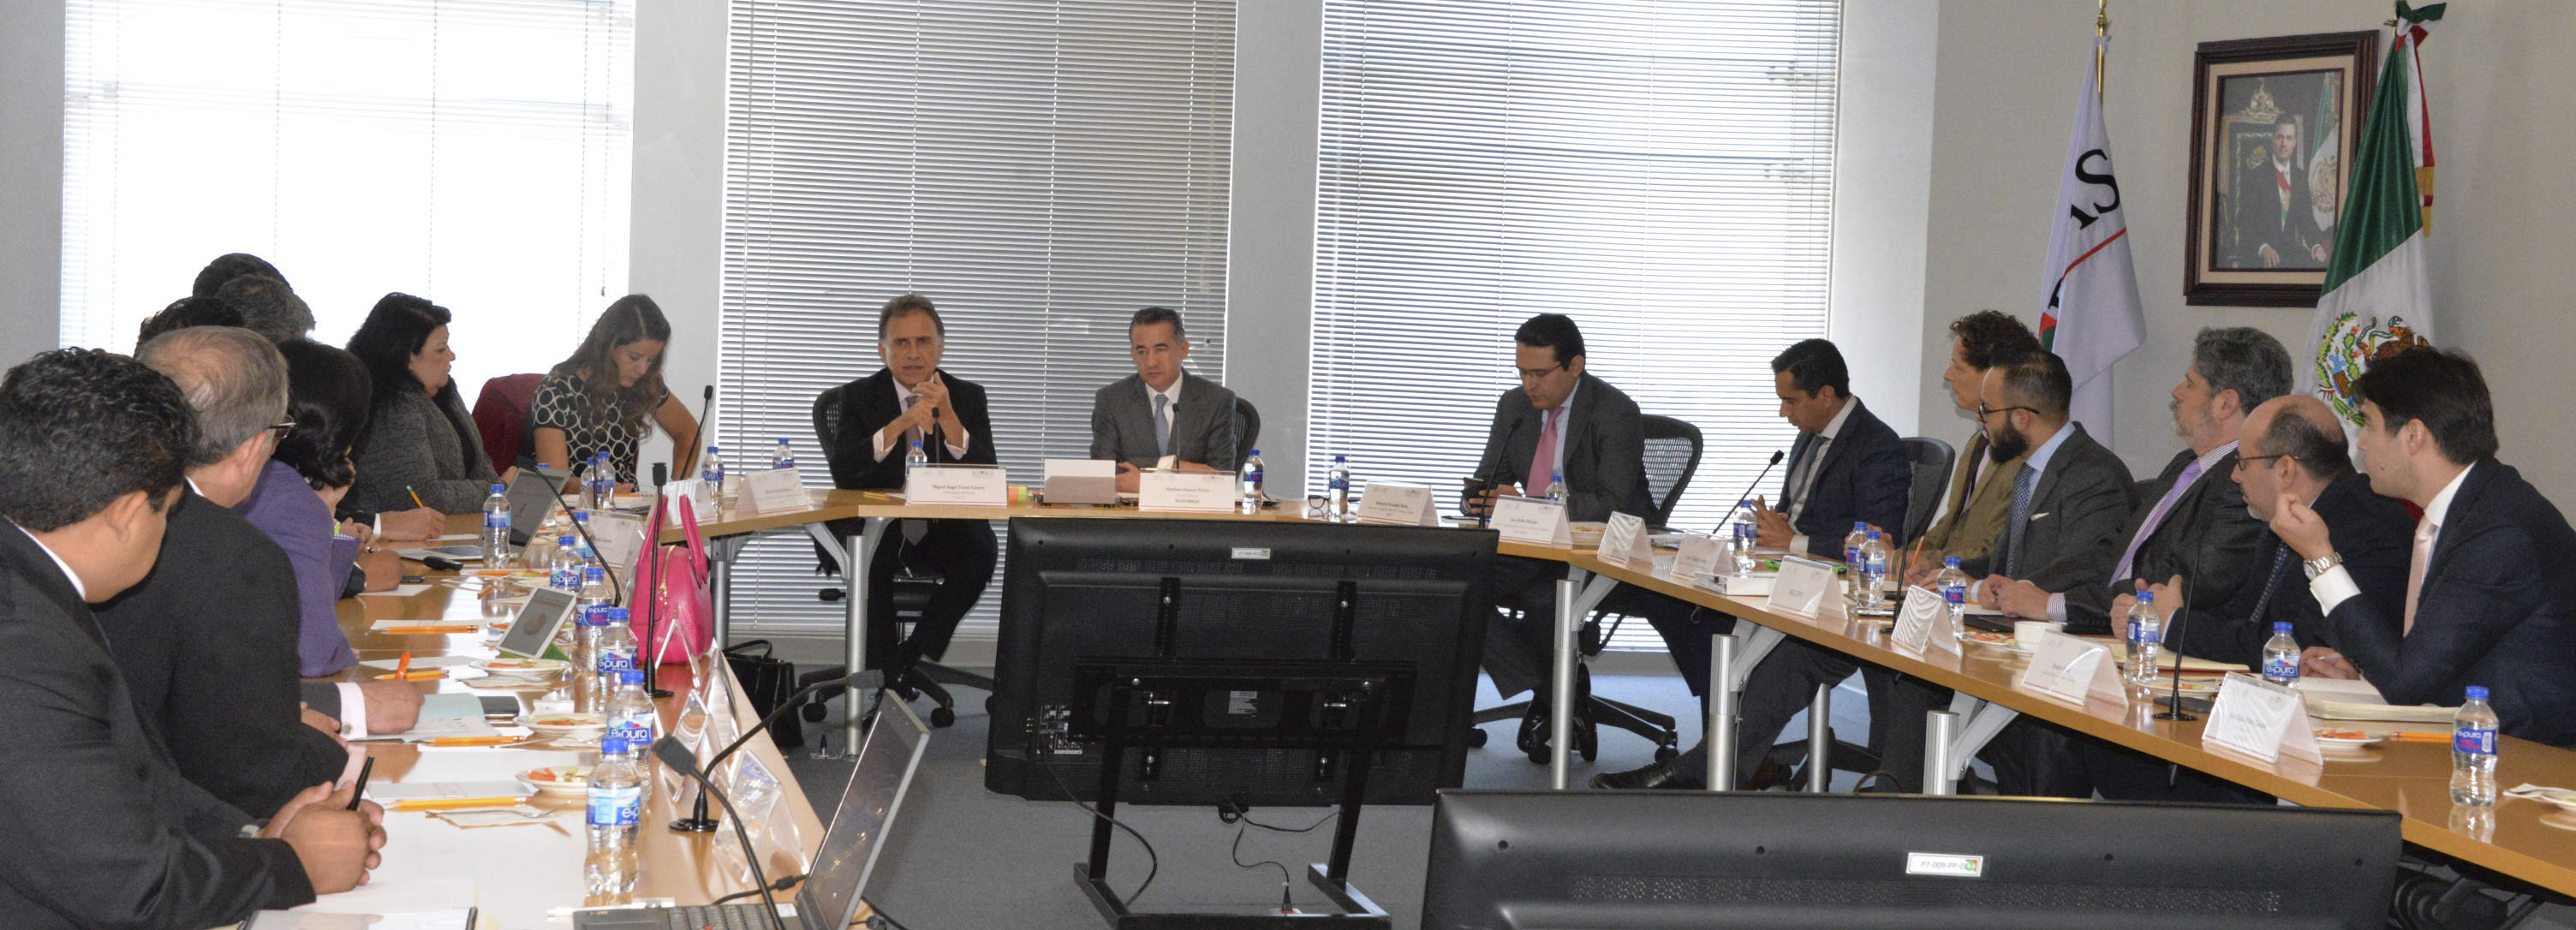 El Director General de Banobras, Abraham Zamora, se reunió con el Gobernador de Veracruz, Miguel Ángel Yunes